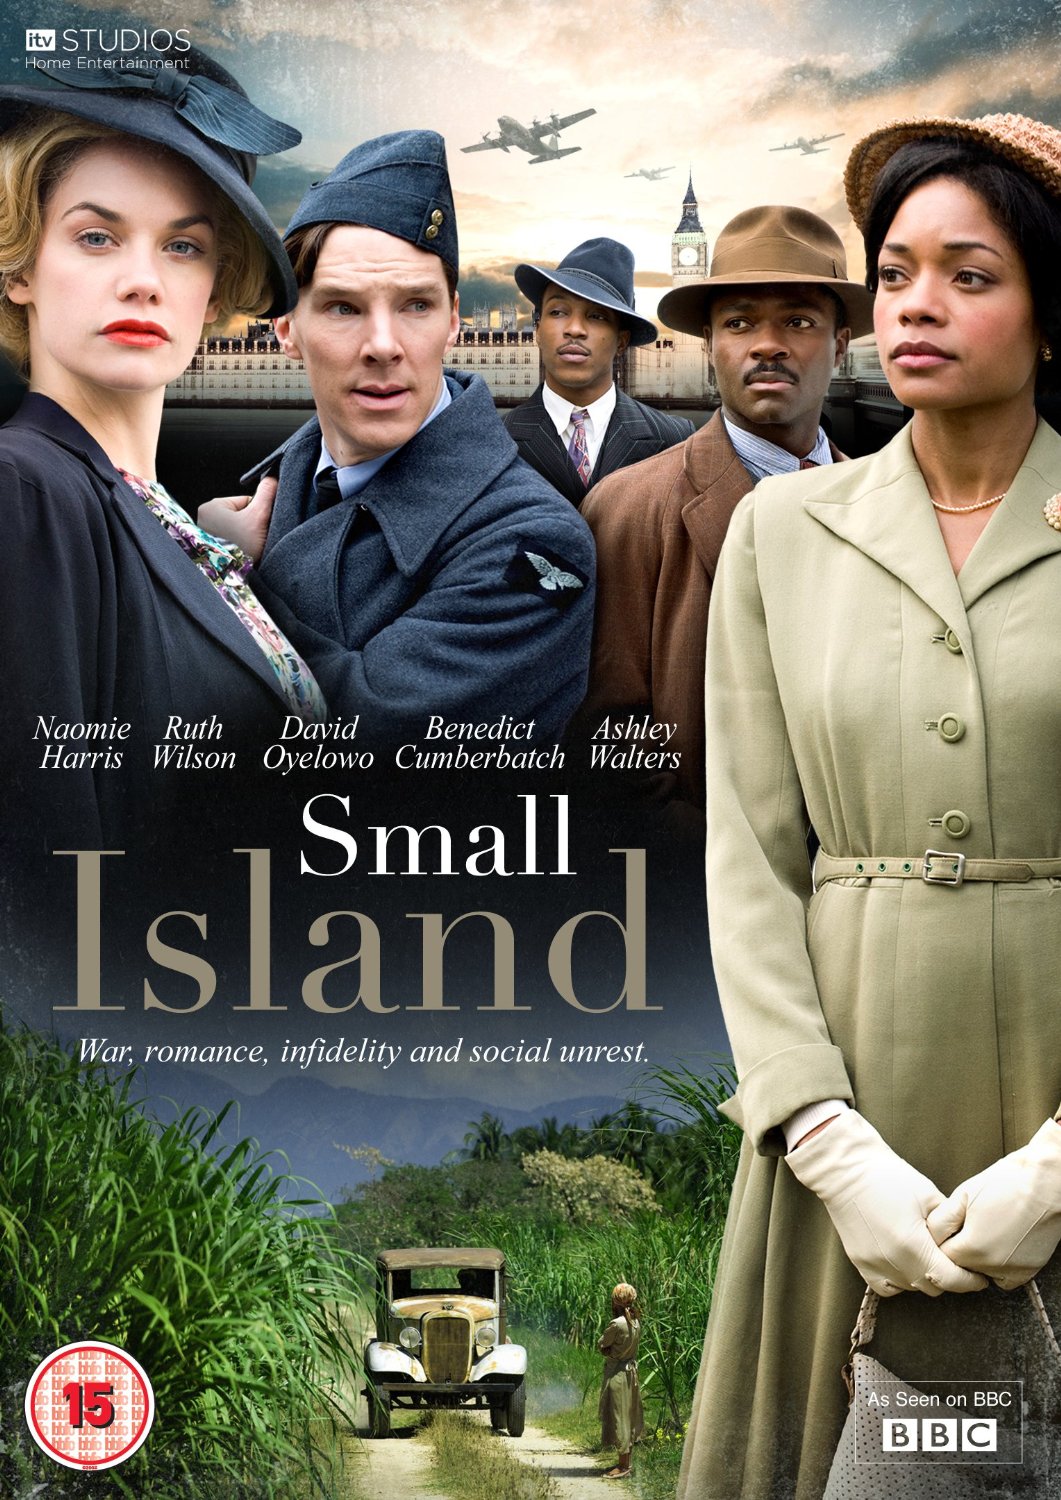 نائومی هریس در صحنه فیلم سینمایی Small Island به همراه دیوید اویلوو، بندیکت کامبربچ، Ashley Walters و Ruth Wilson